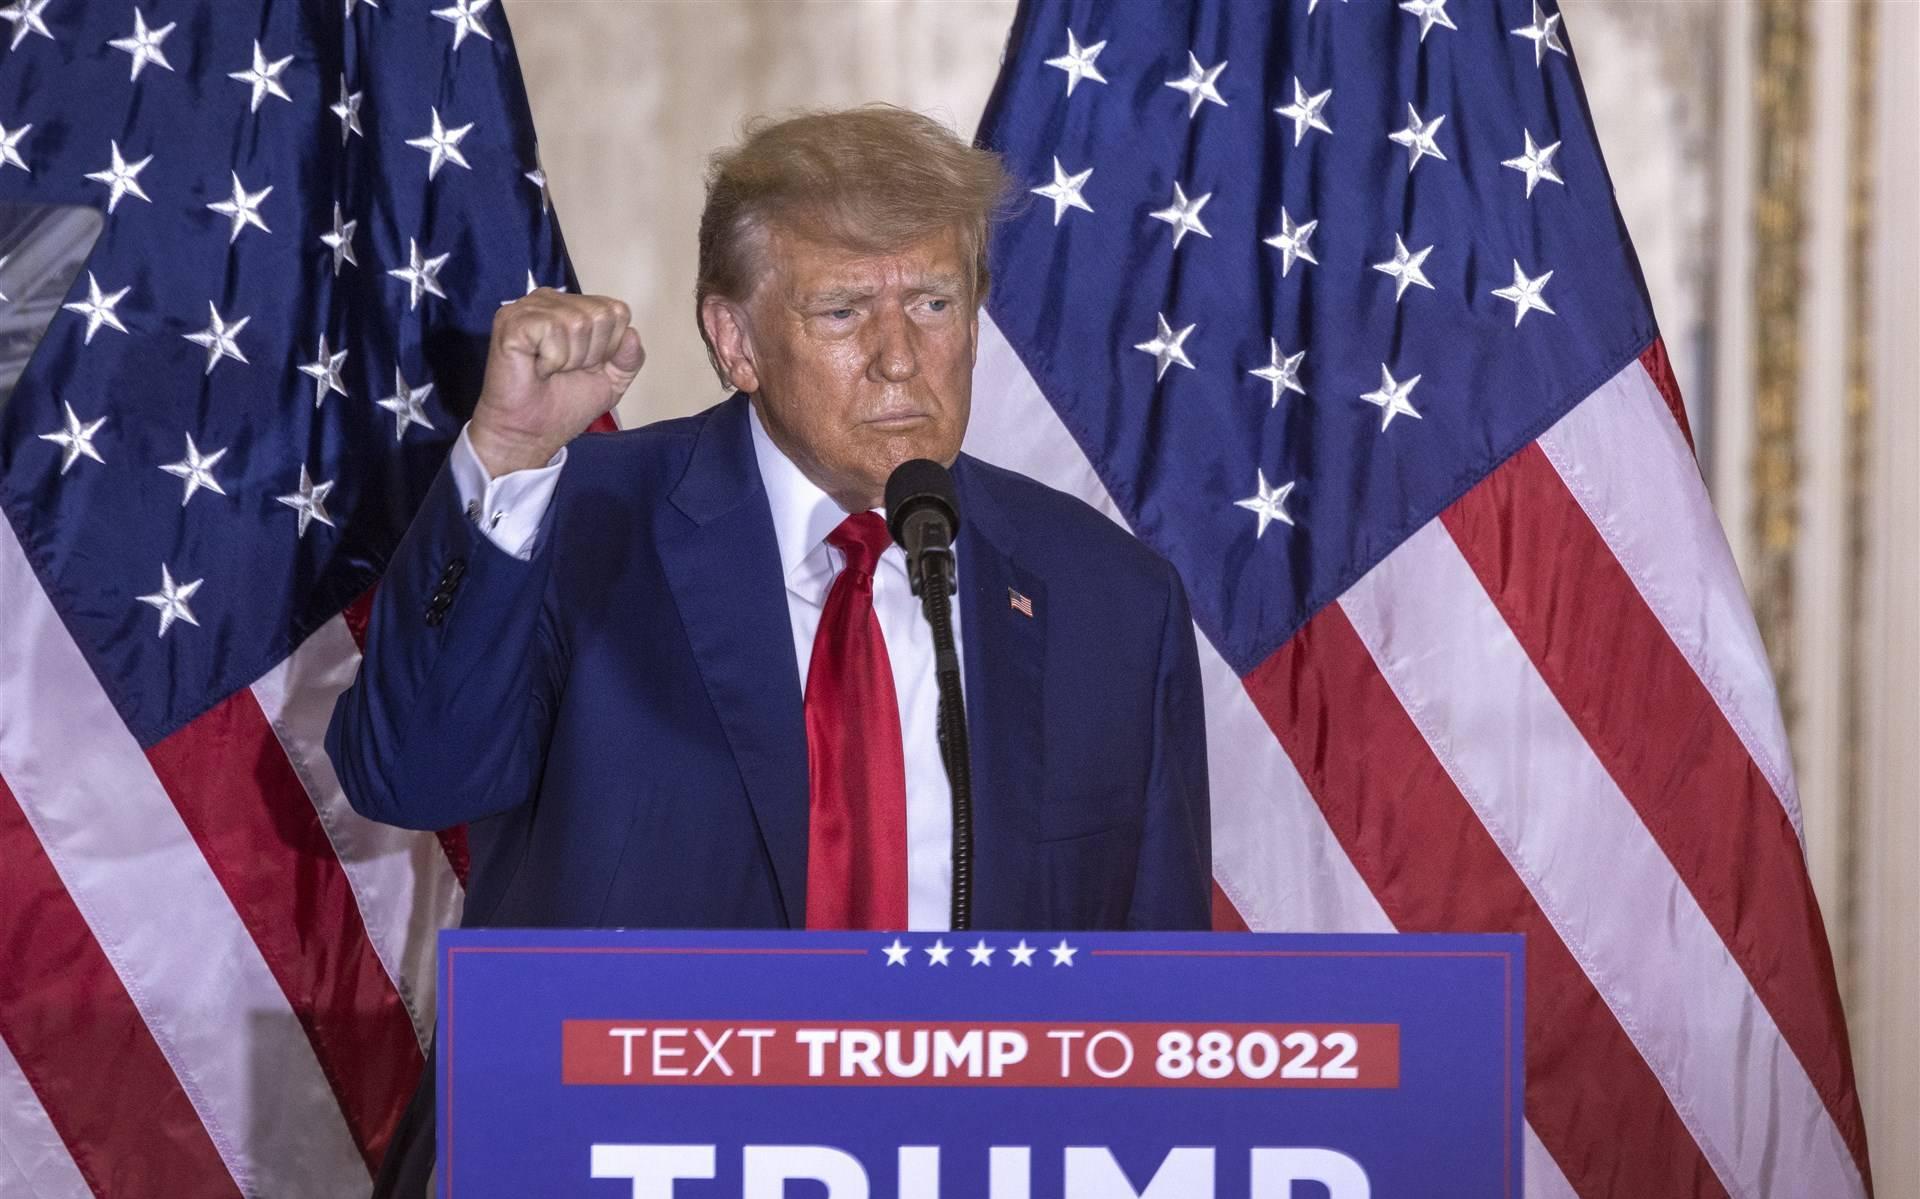 Trump in toespraak: aanklacht is inmenging in verkiezingen